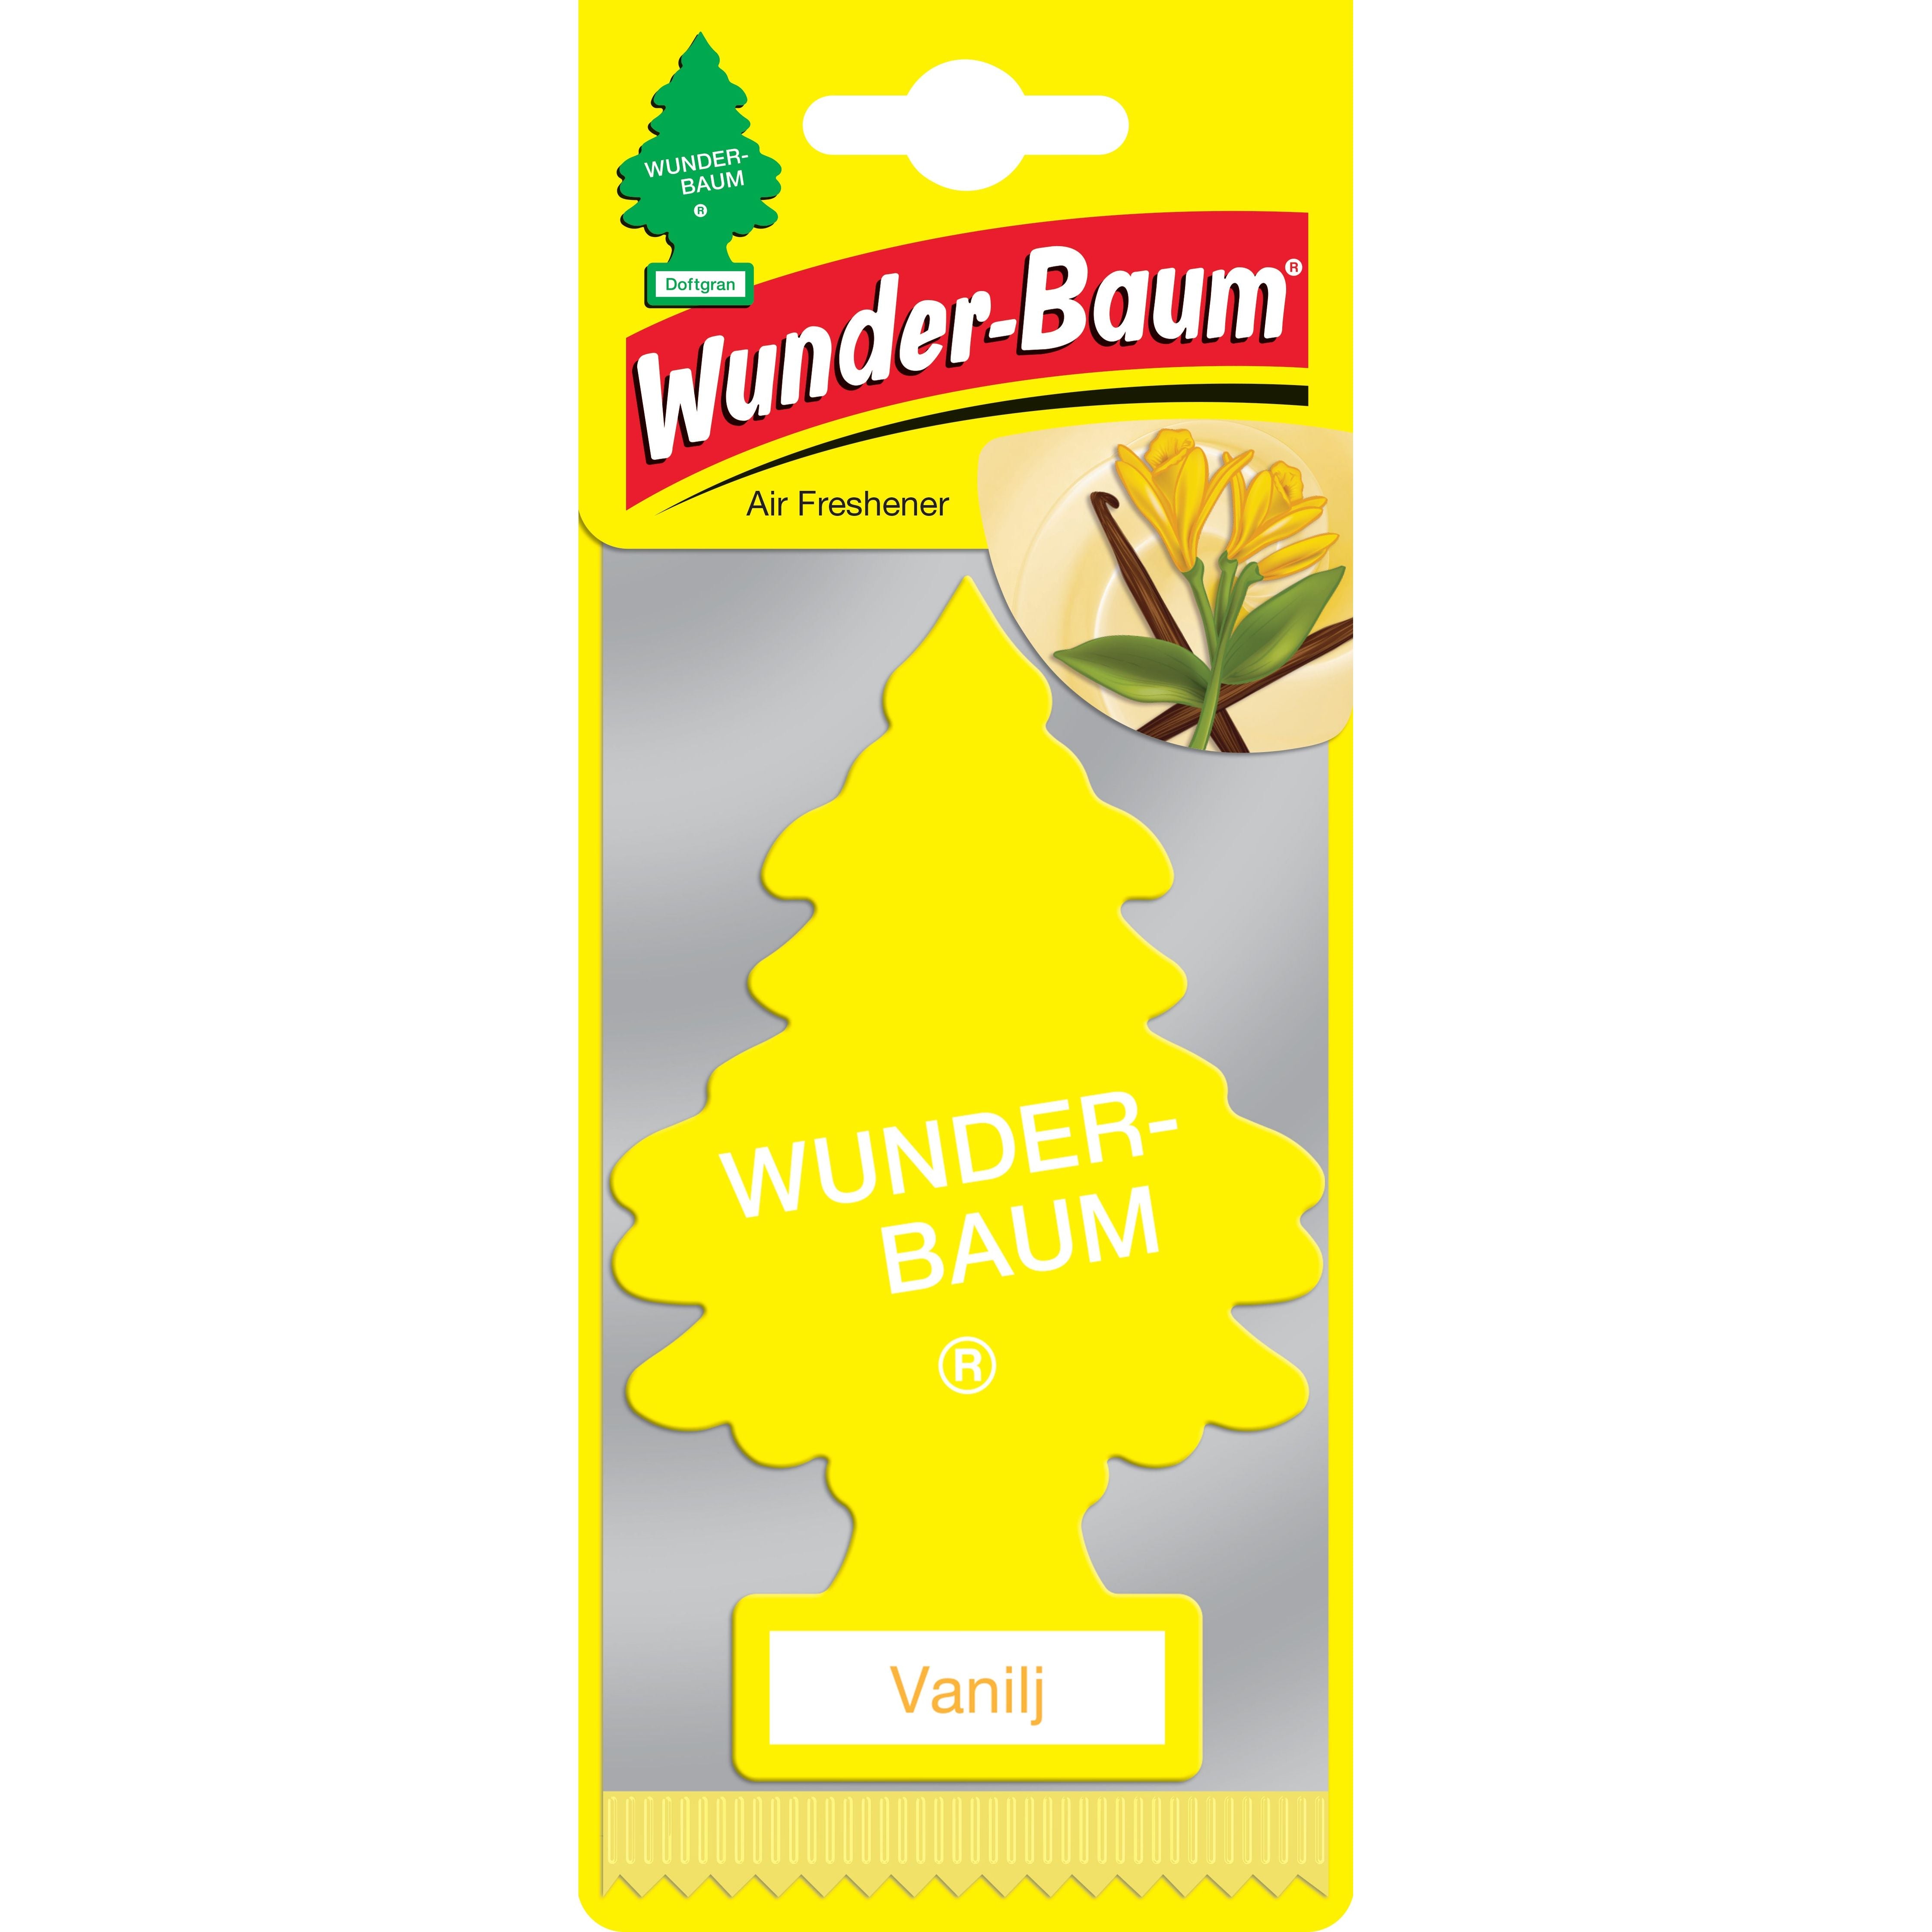 WUNDER-BAUM Skovfrisk 1-pack fra Wunder-Baum - kun kr. 15.00